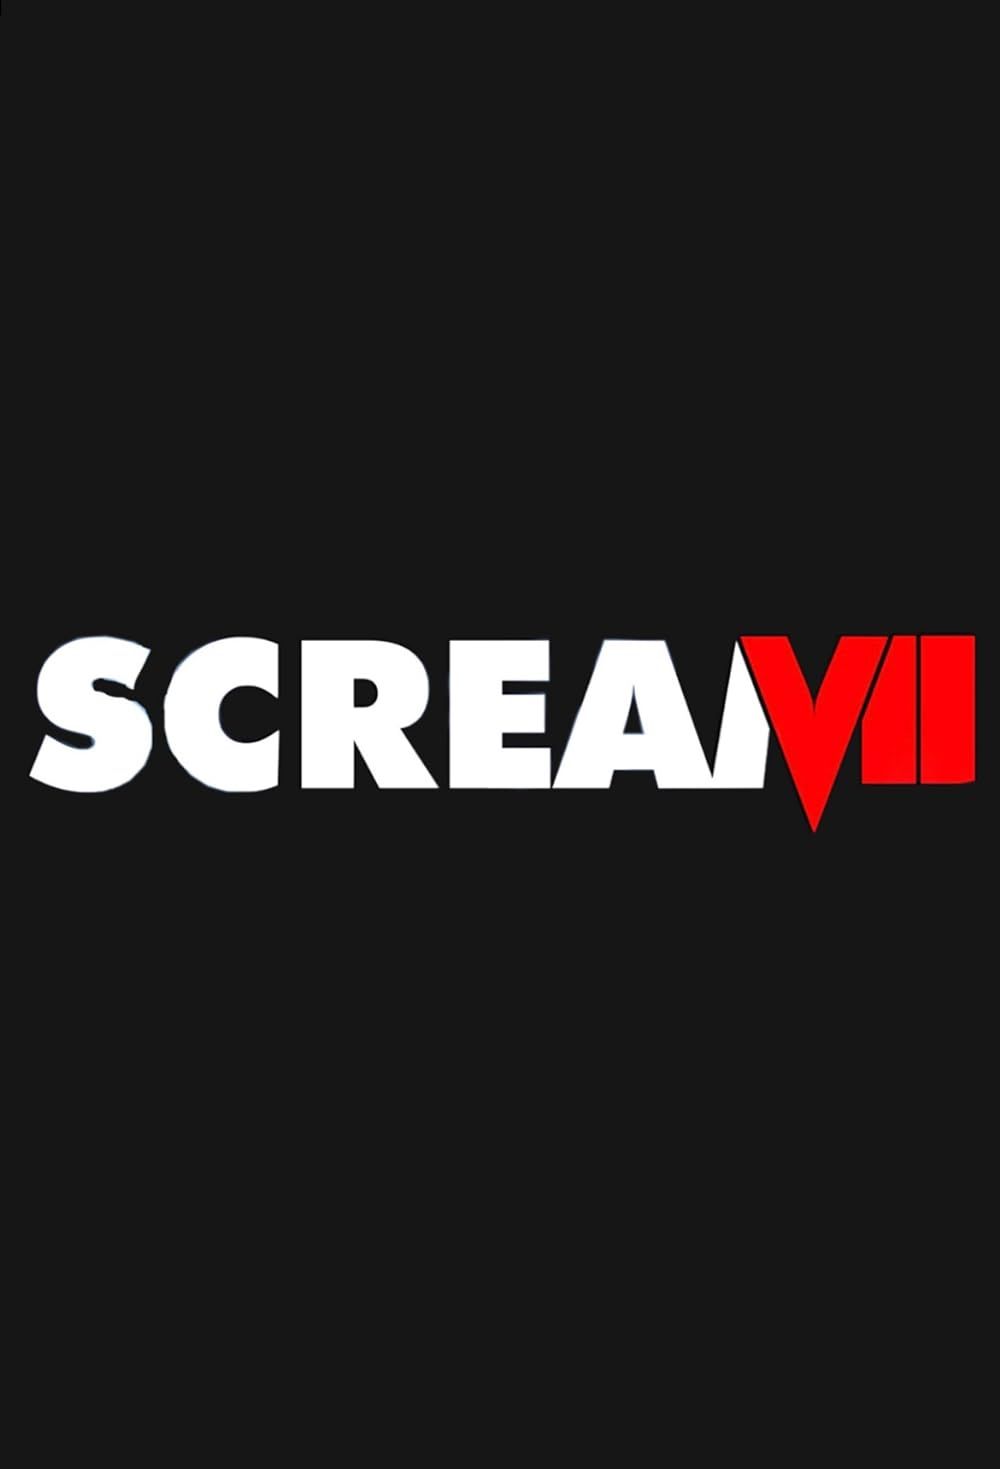 El logotipo de Scream VII sobre un fondo negro.